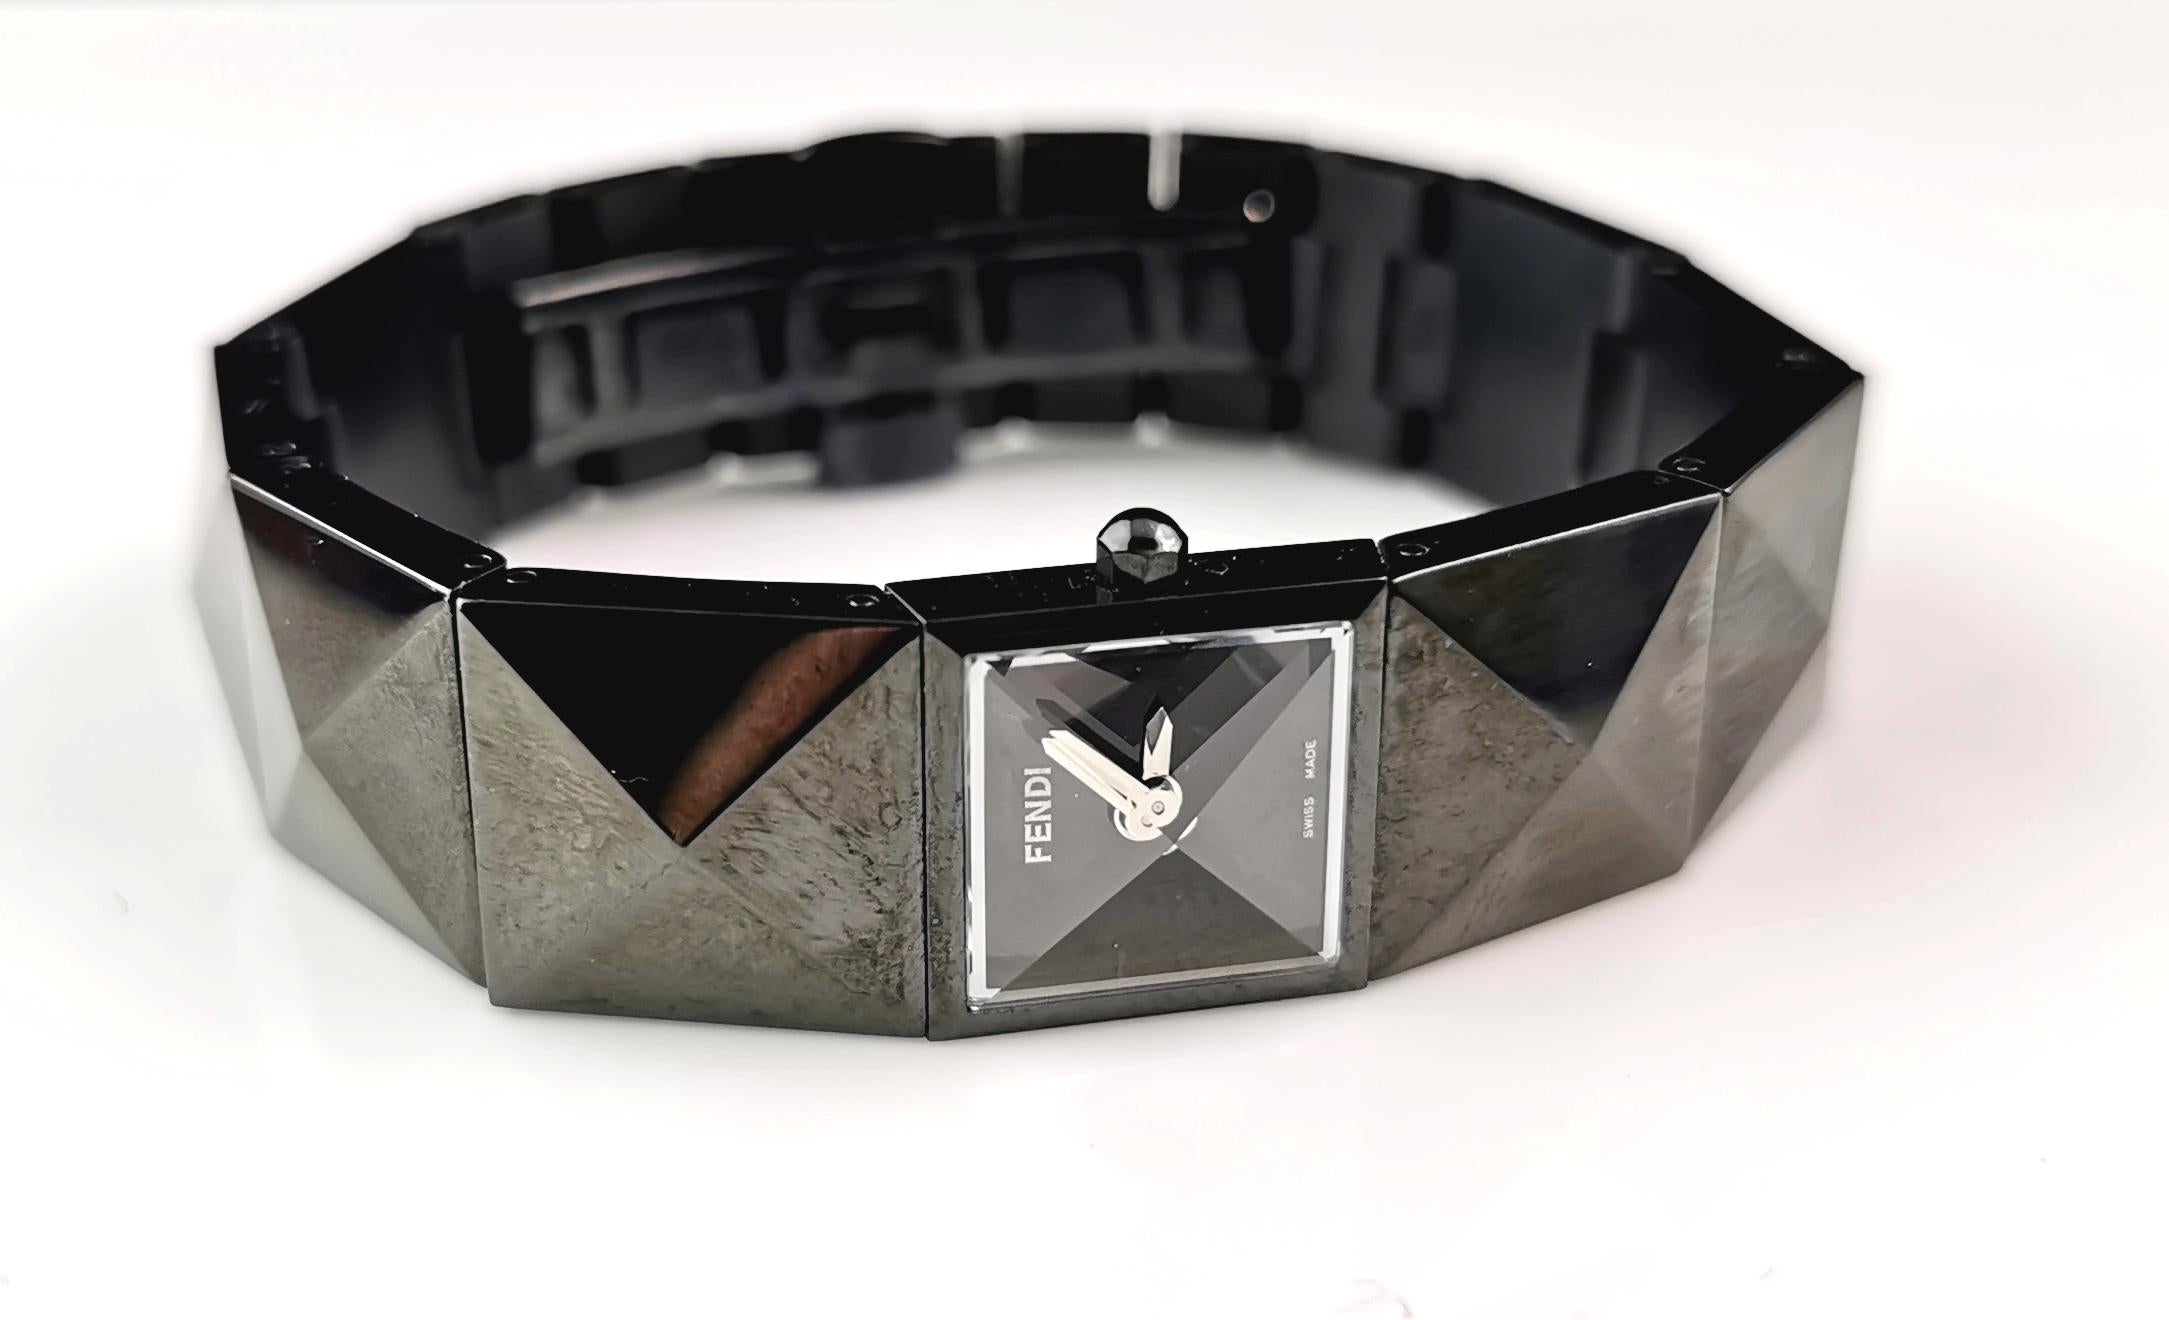 Une montre-bracelet Fendi 4270 l pour femme, élégante et emblématique.

Il s'agit d'une montre à bracelet en acier plaqué ionique noir avec un maillon unique au design pyramidal qui fait vraiment ressortir cette montre.

Elle possède un petit cadran